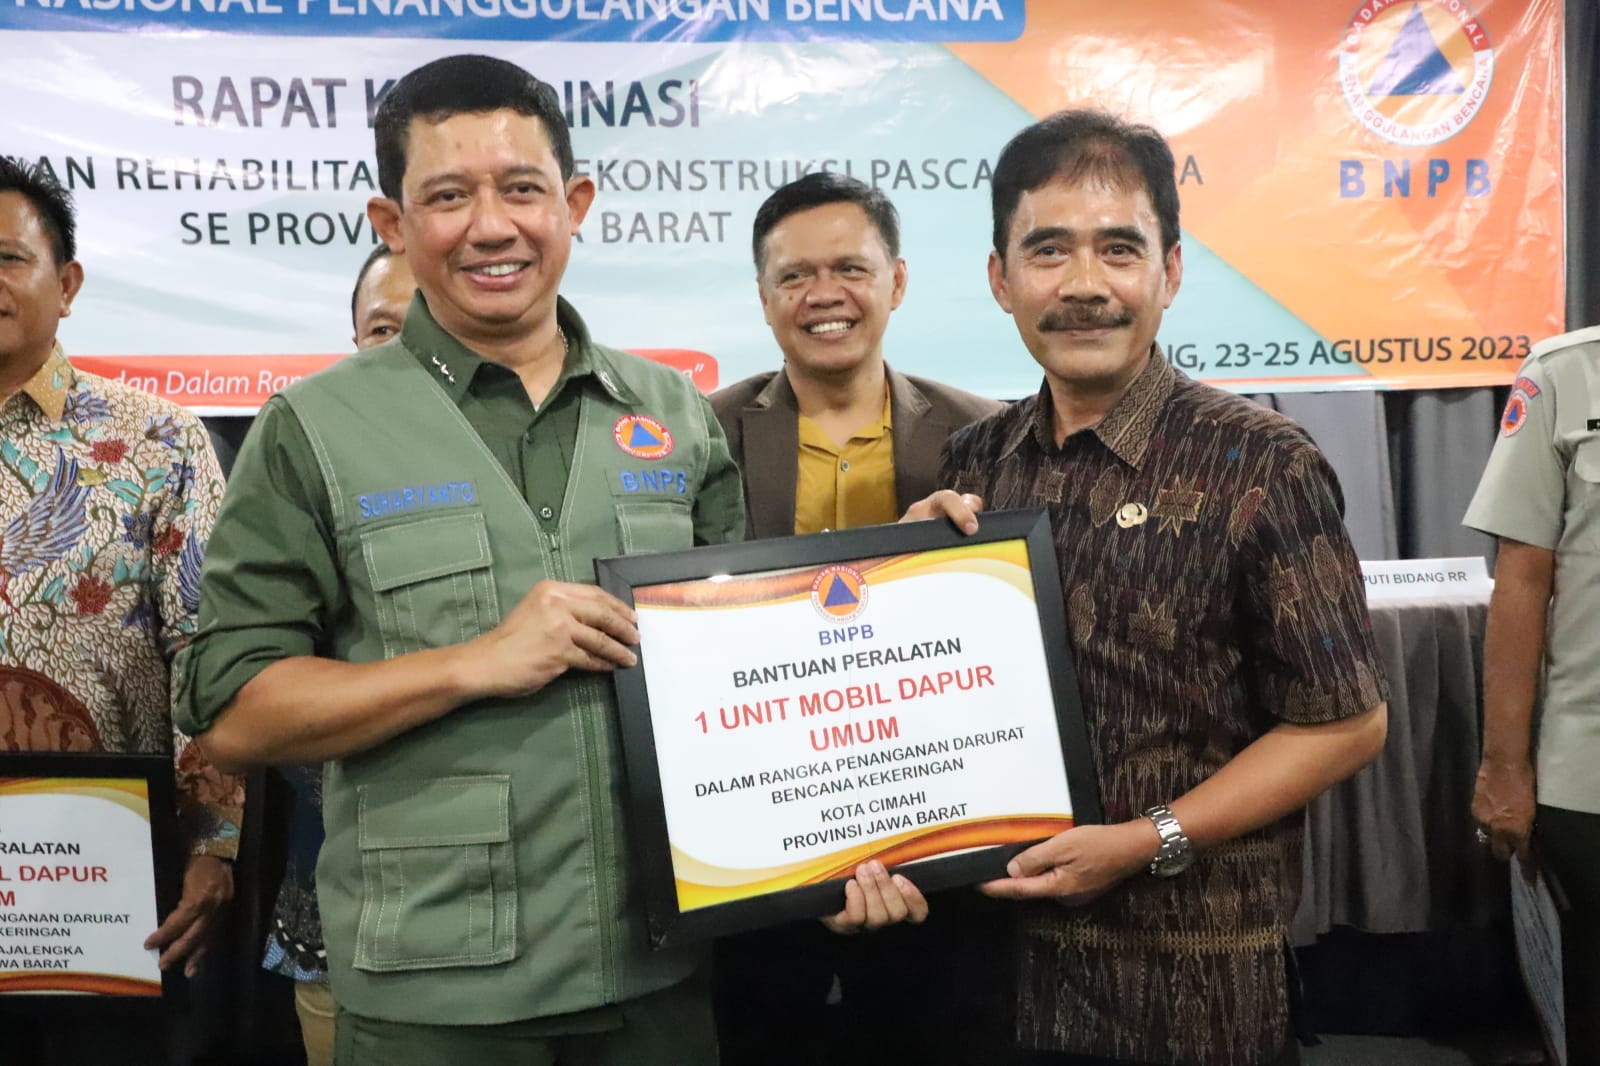 Kepala BNPB Letjen TNI Suharyanto (rompi hijau kemeja hijau) secara simbolis memberikan bantuan dukungan operasional penanganan darurat bencana saat Rapat Koordinasi Penyelenggaraan Rehabilitasi dan Rekonstruksi wilayah Provinsi Jawa Barat di Kabupaten Subang, Jawa Barat, pada Kamis (24/8).